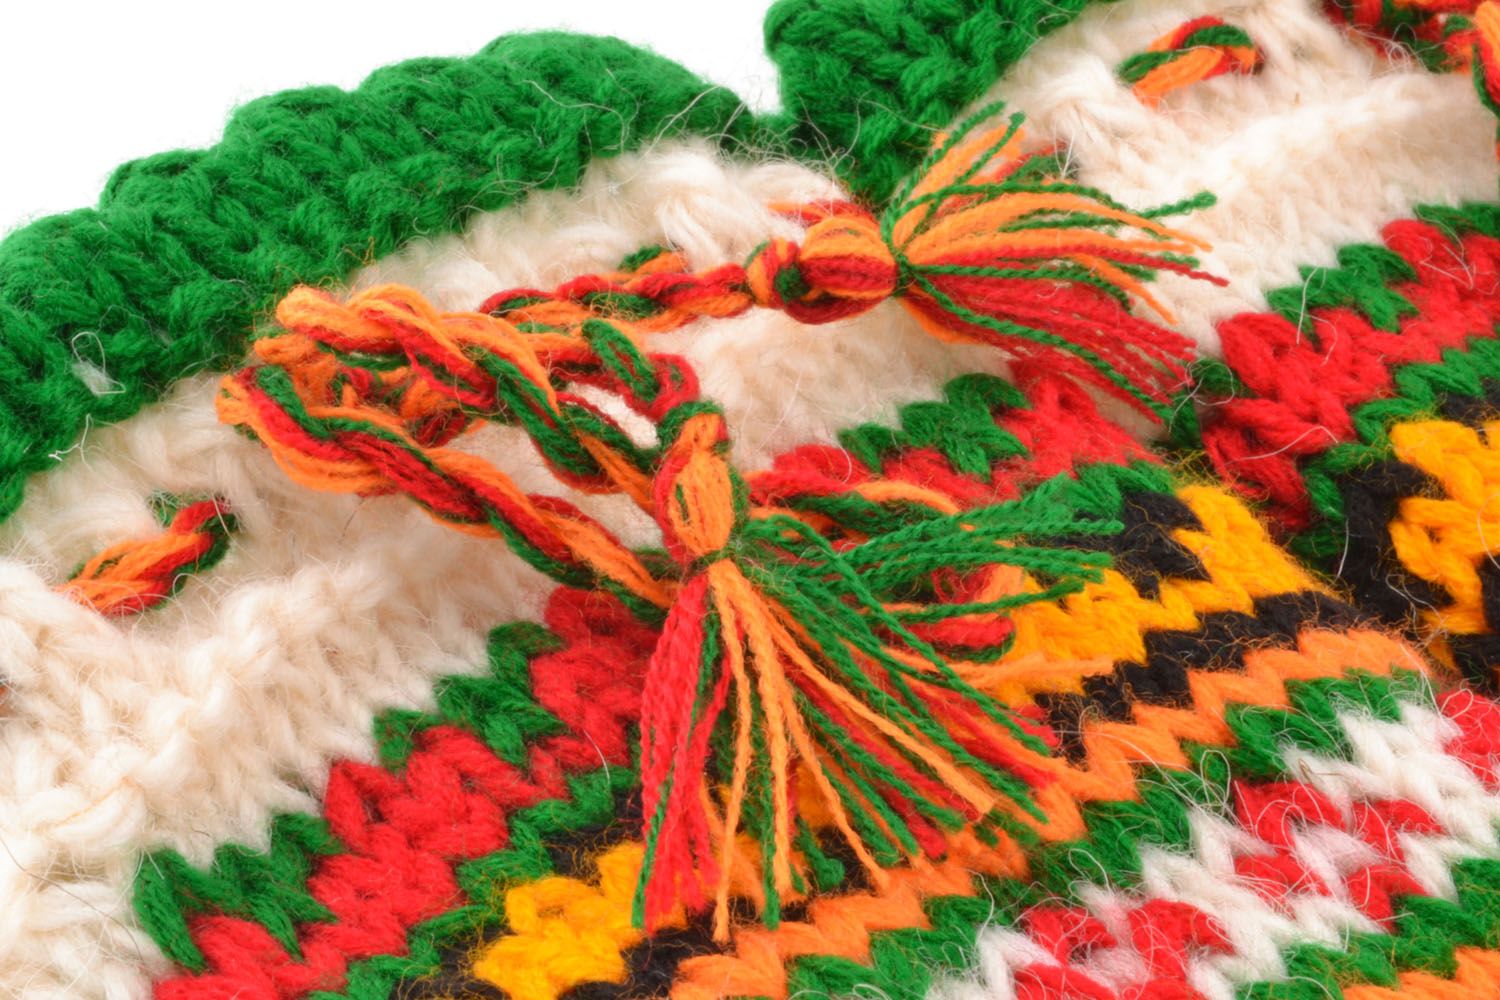 Calcetines de lana tejidos a mano con ornamento	 foto 3